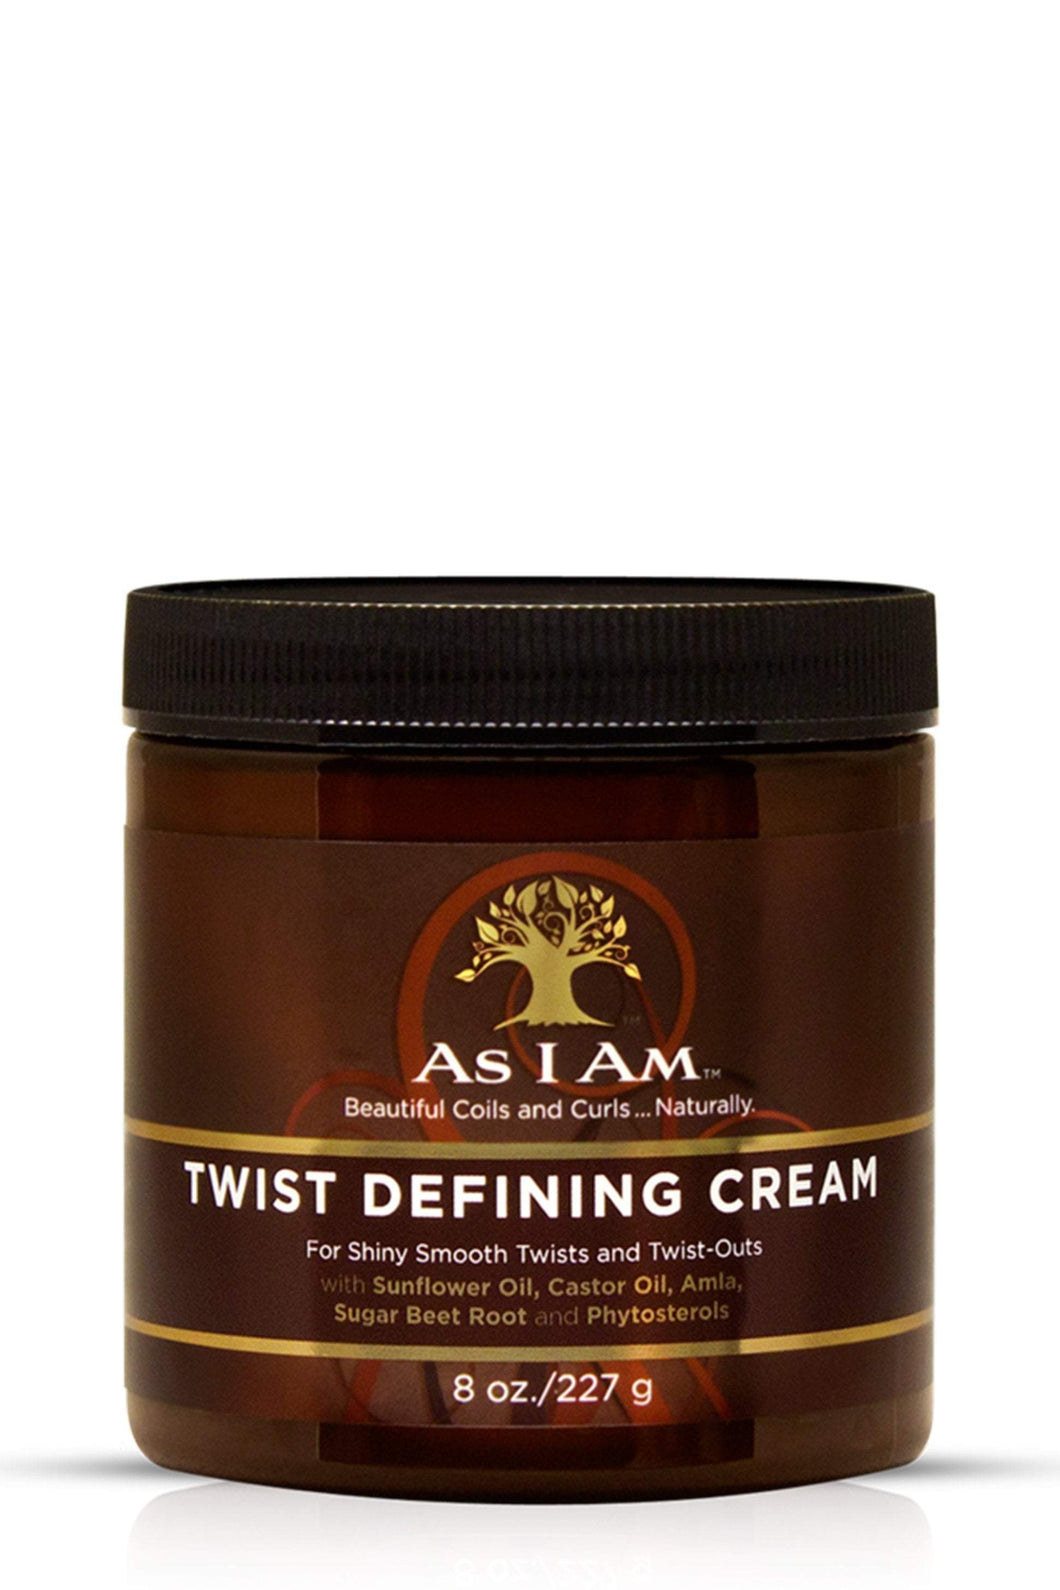 AS I AM Twist Defining Cream Product